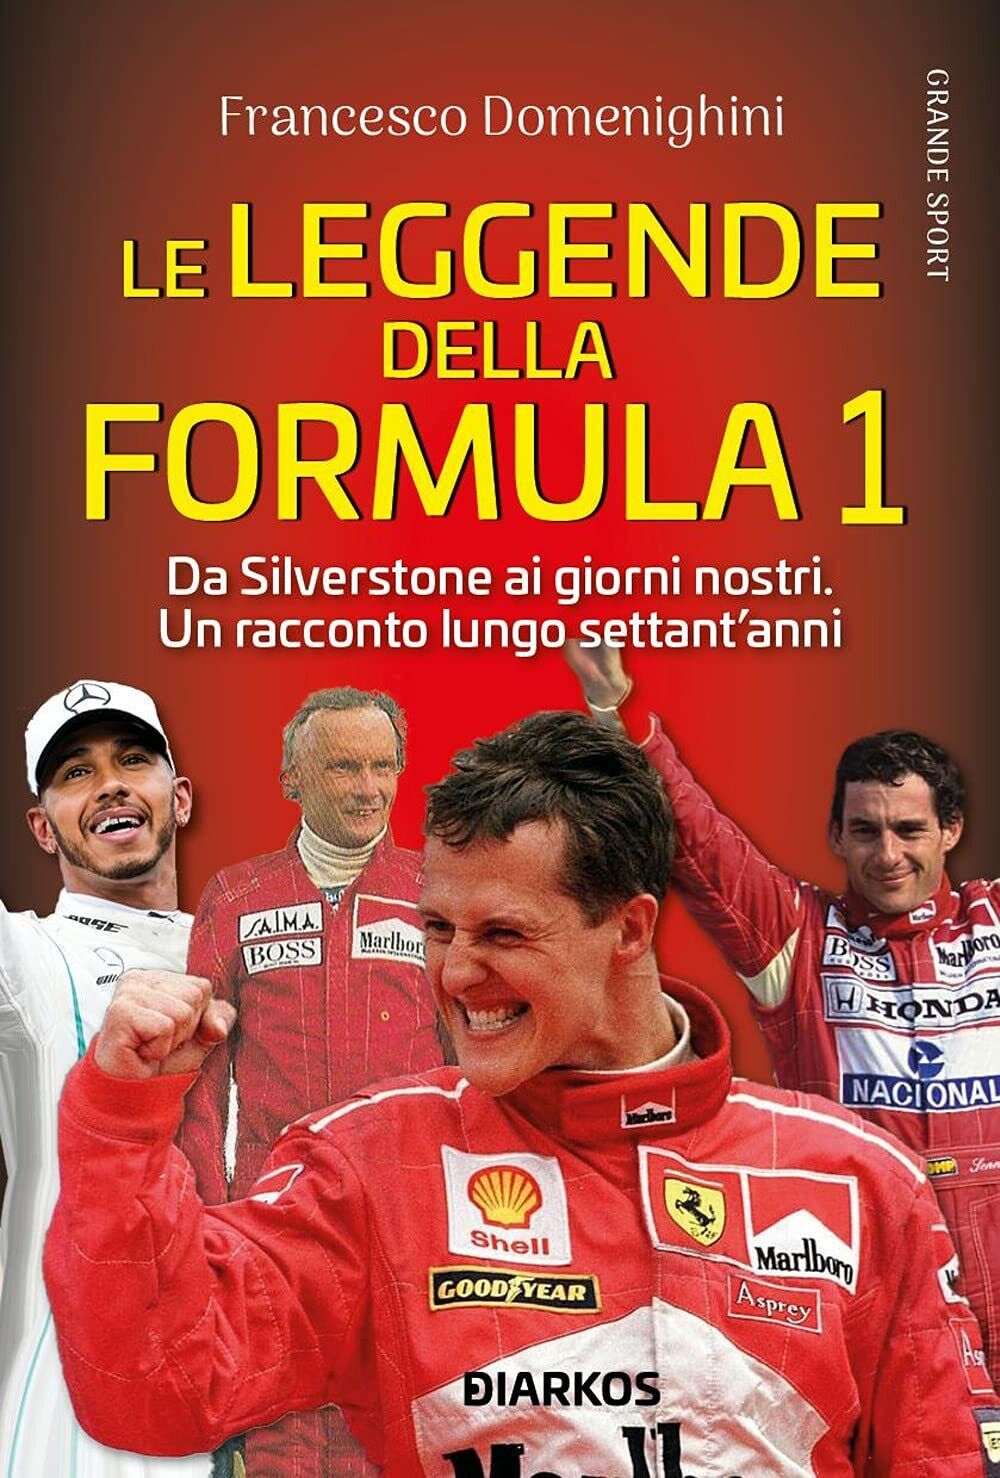 Le leggende della Formula 1 - Francesco Domenighini - DIARKOS, 2021 libro usato